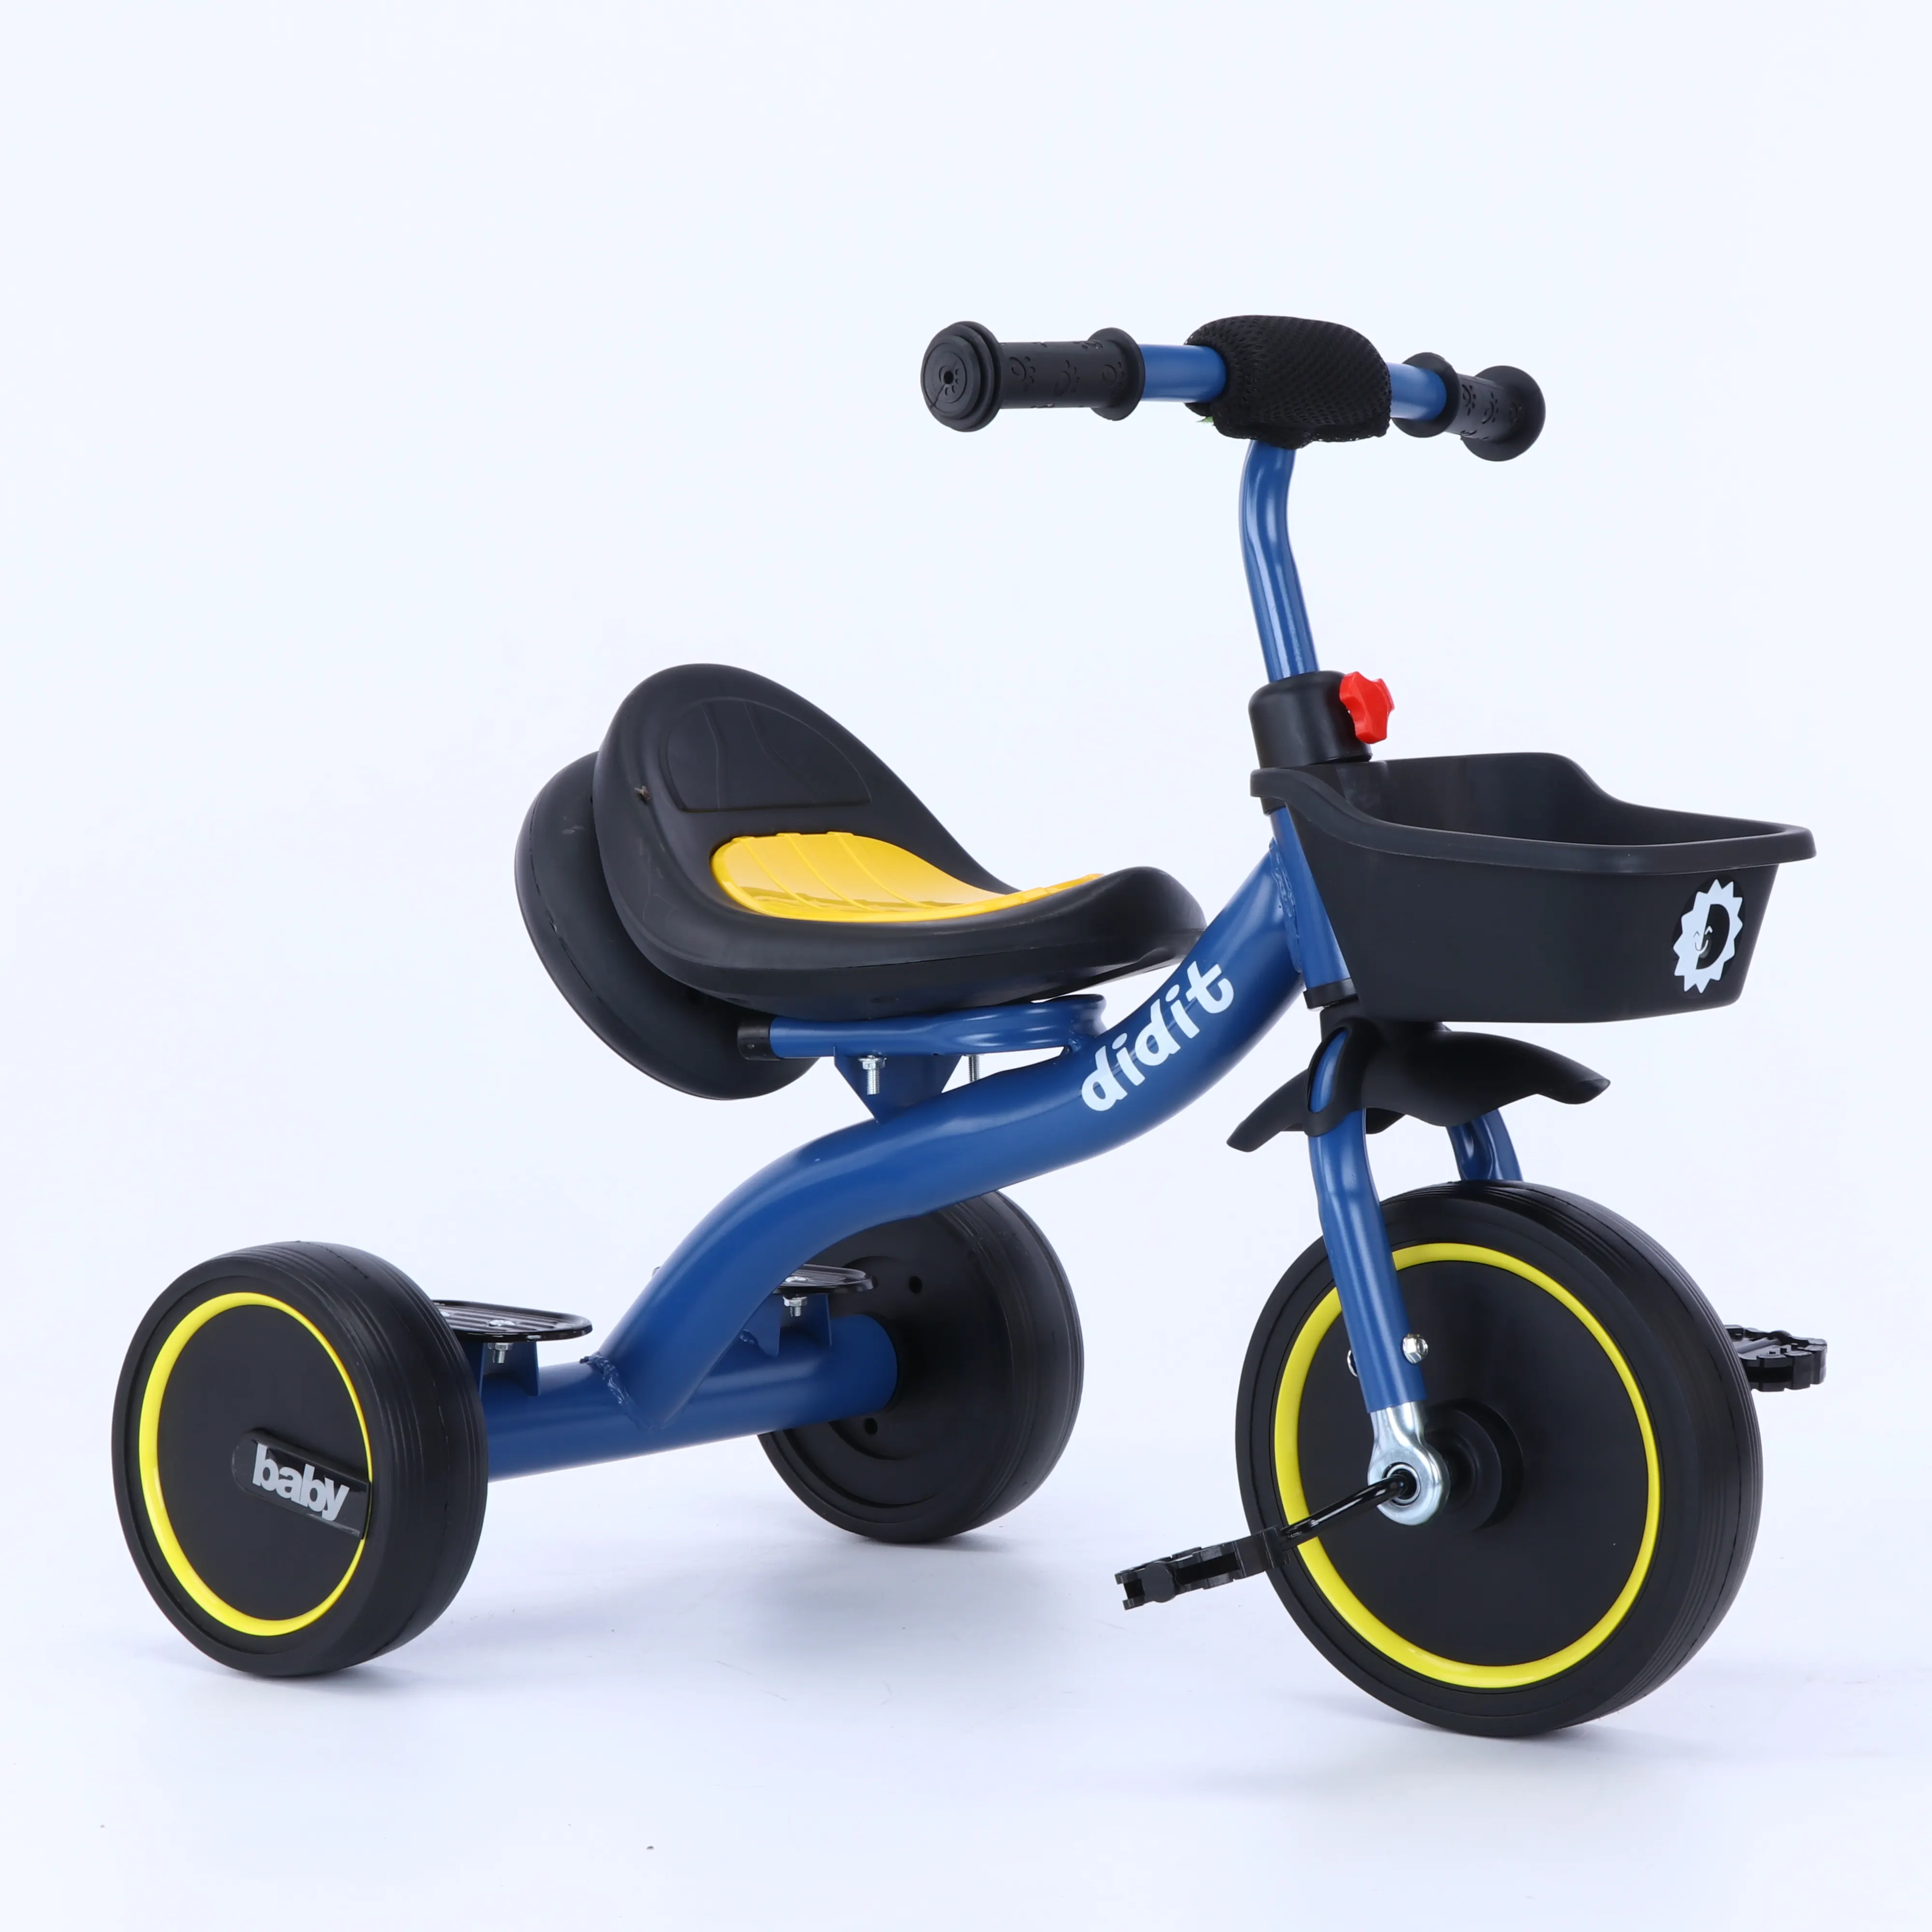 Vente en gros de jouets populaires de haute qualité pour Noël Jouets pour bébés pour enfants Tricycle en métal pour enfants Tricycle pour enfants à vendre Trike pour enfants